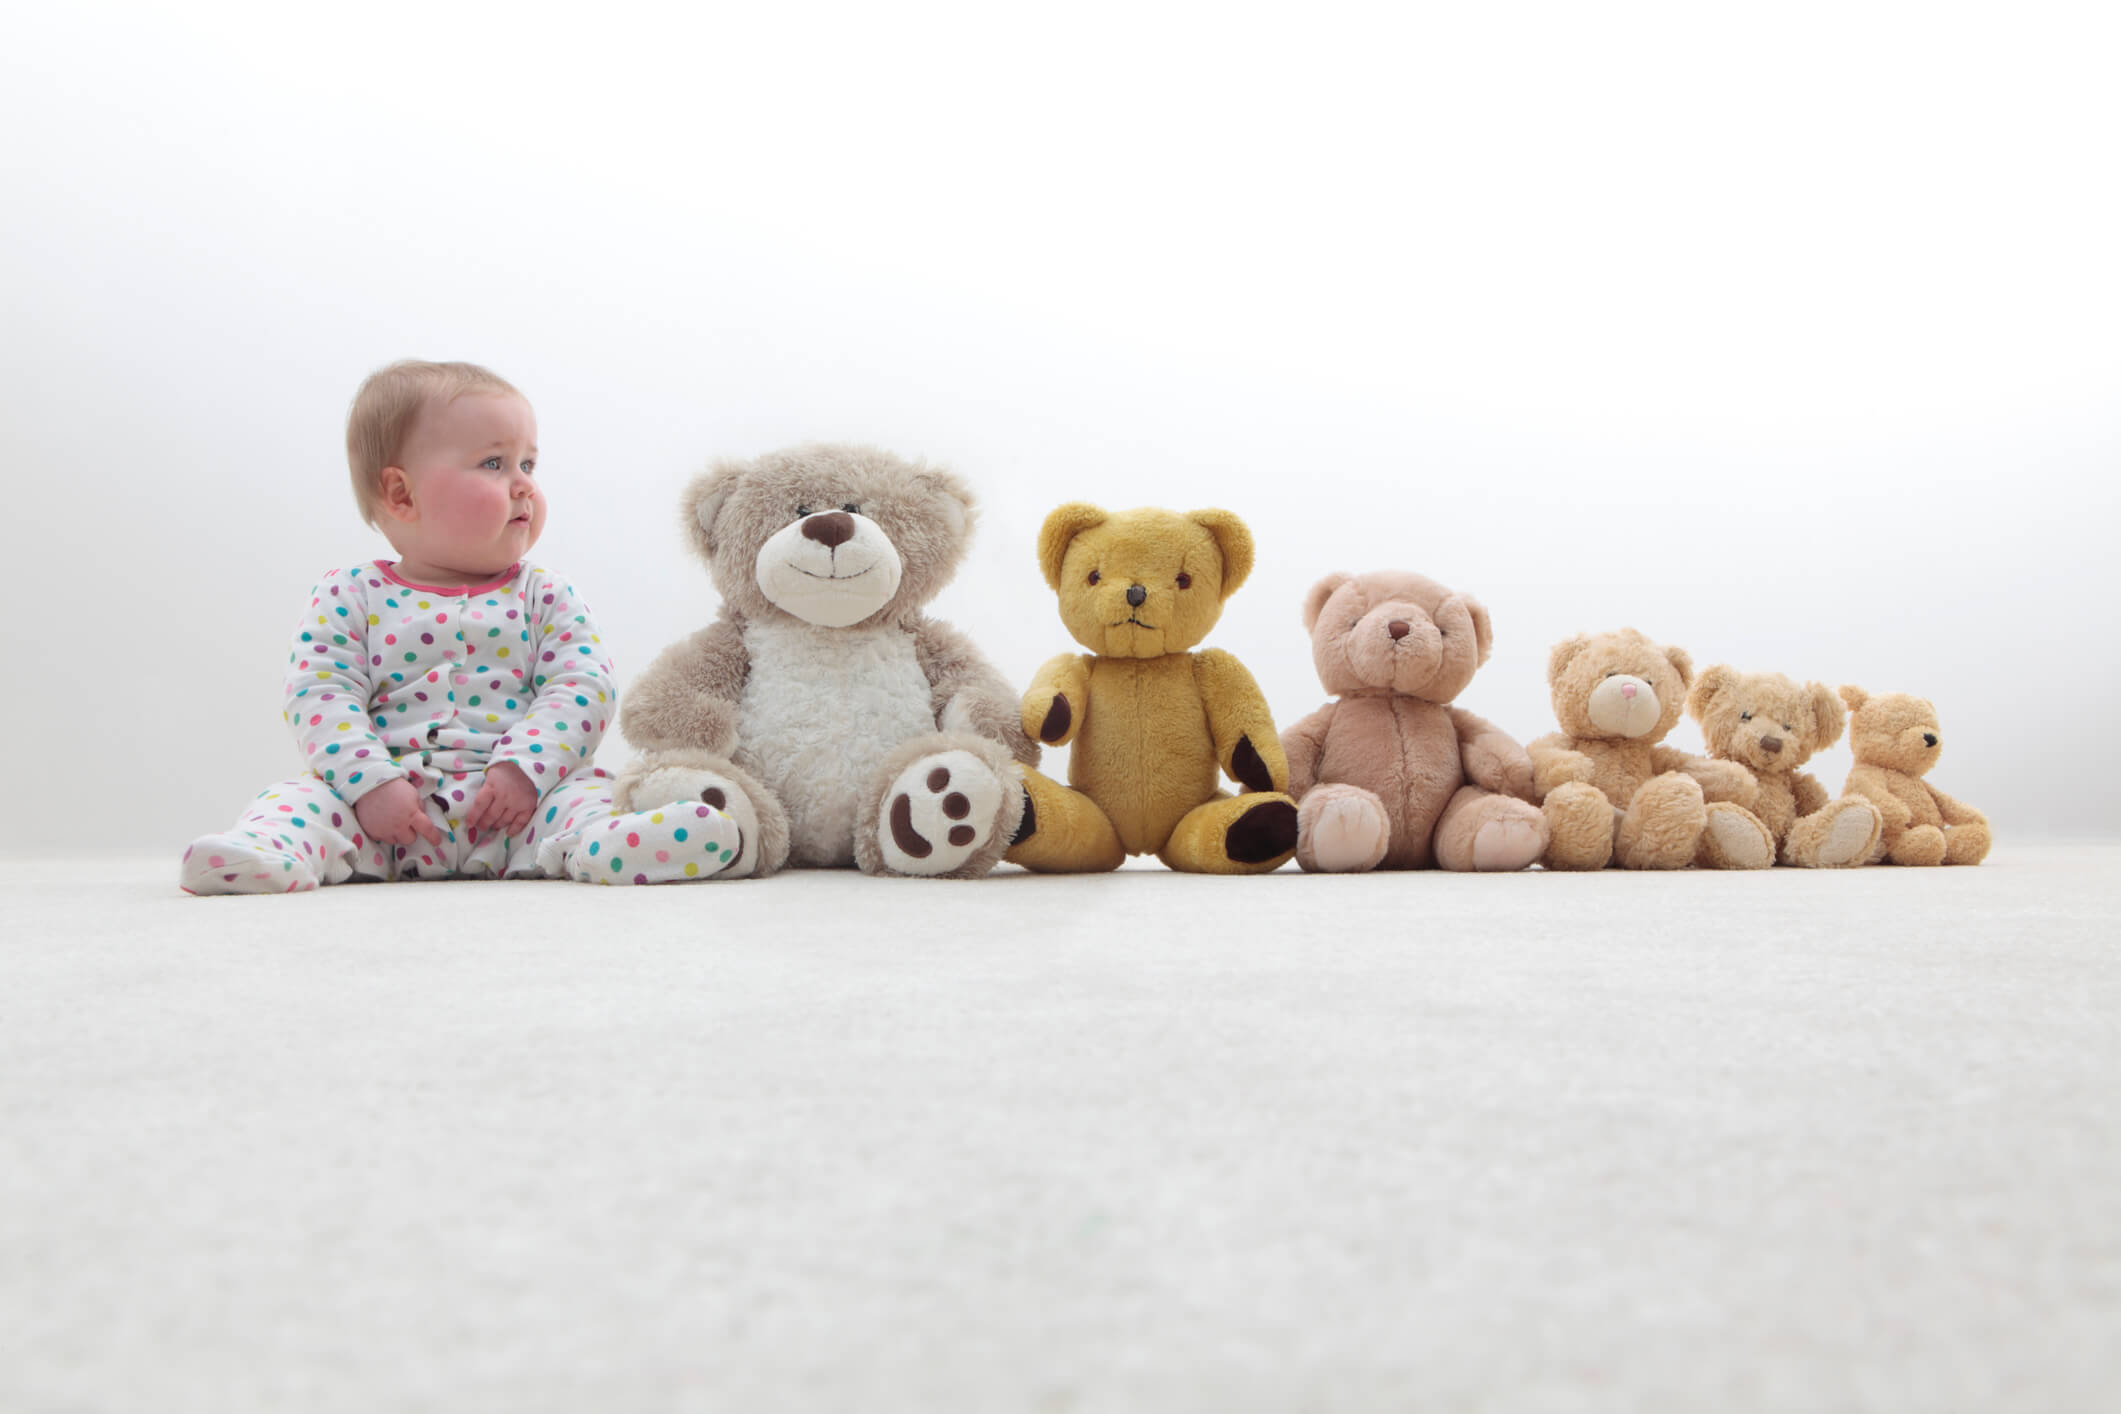 Kisbaba különböző méretű kismackókkal ül egy sorban, amely a baba fejlődését érzékelteti